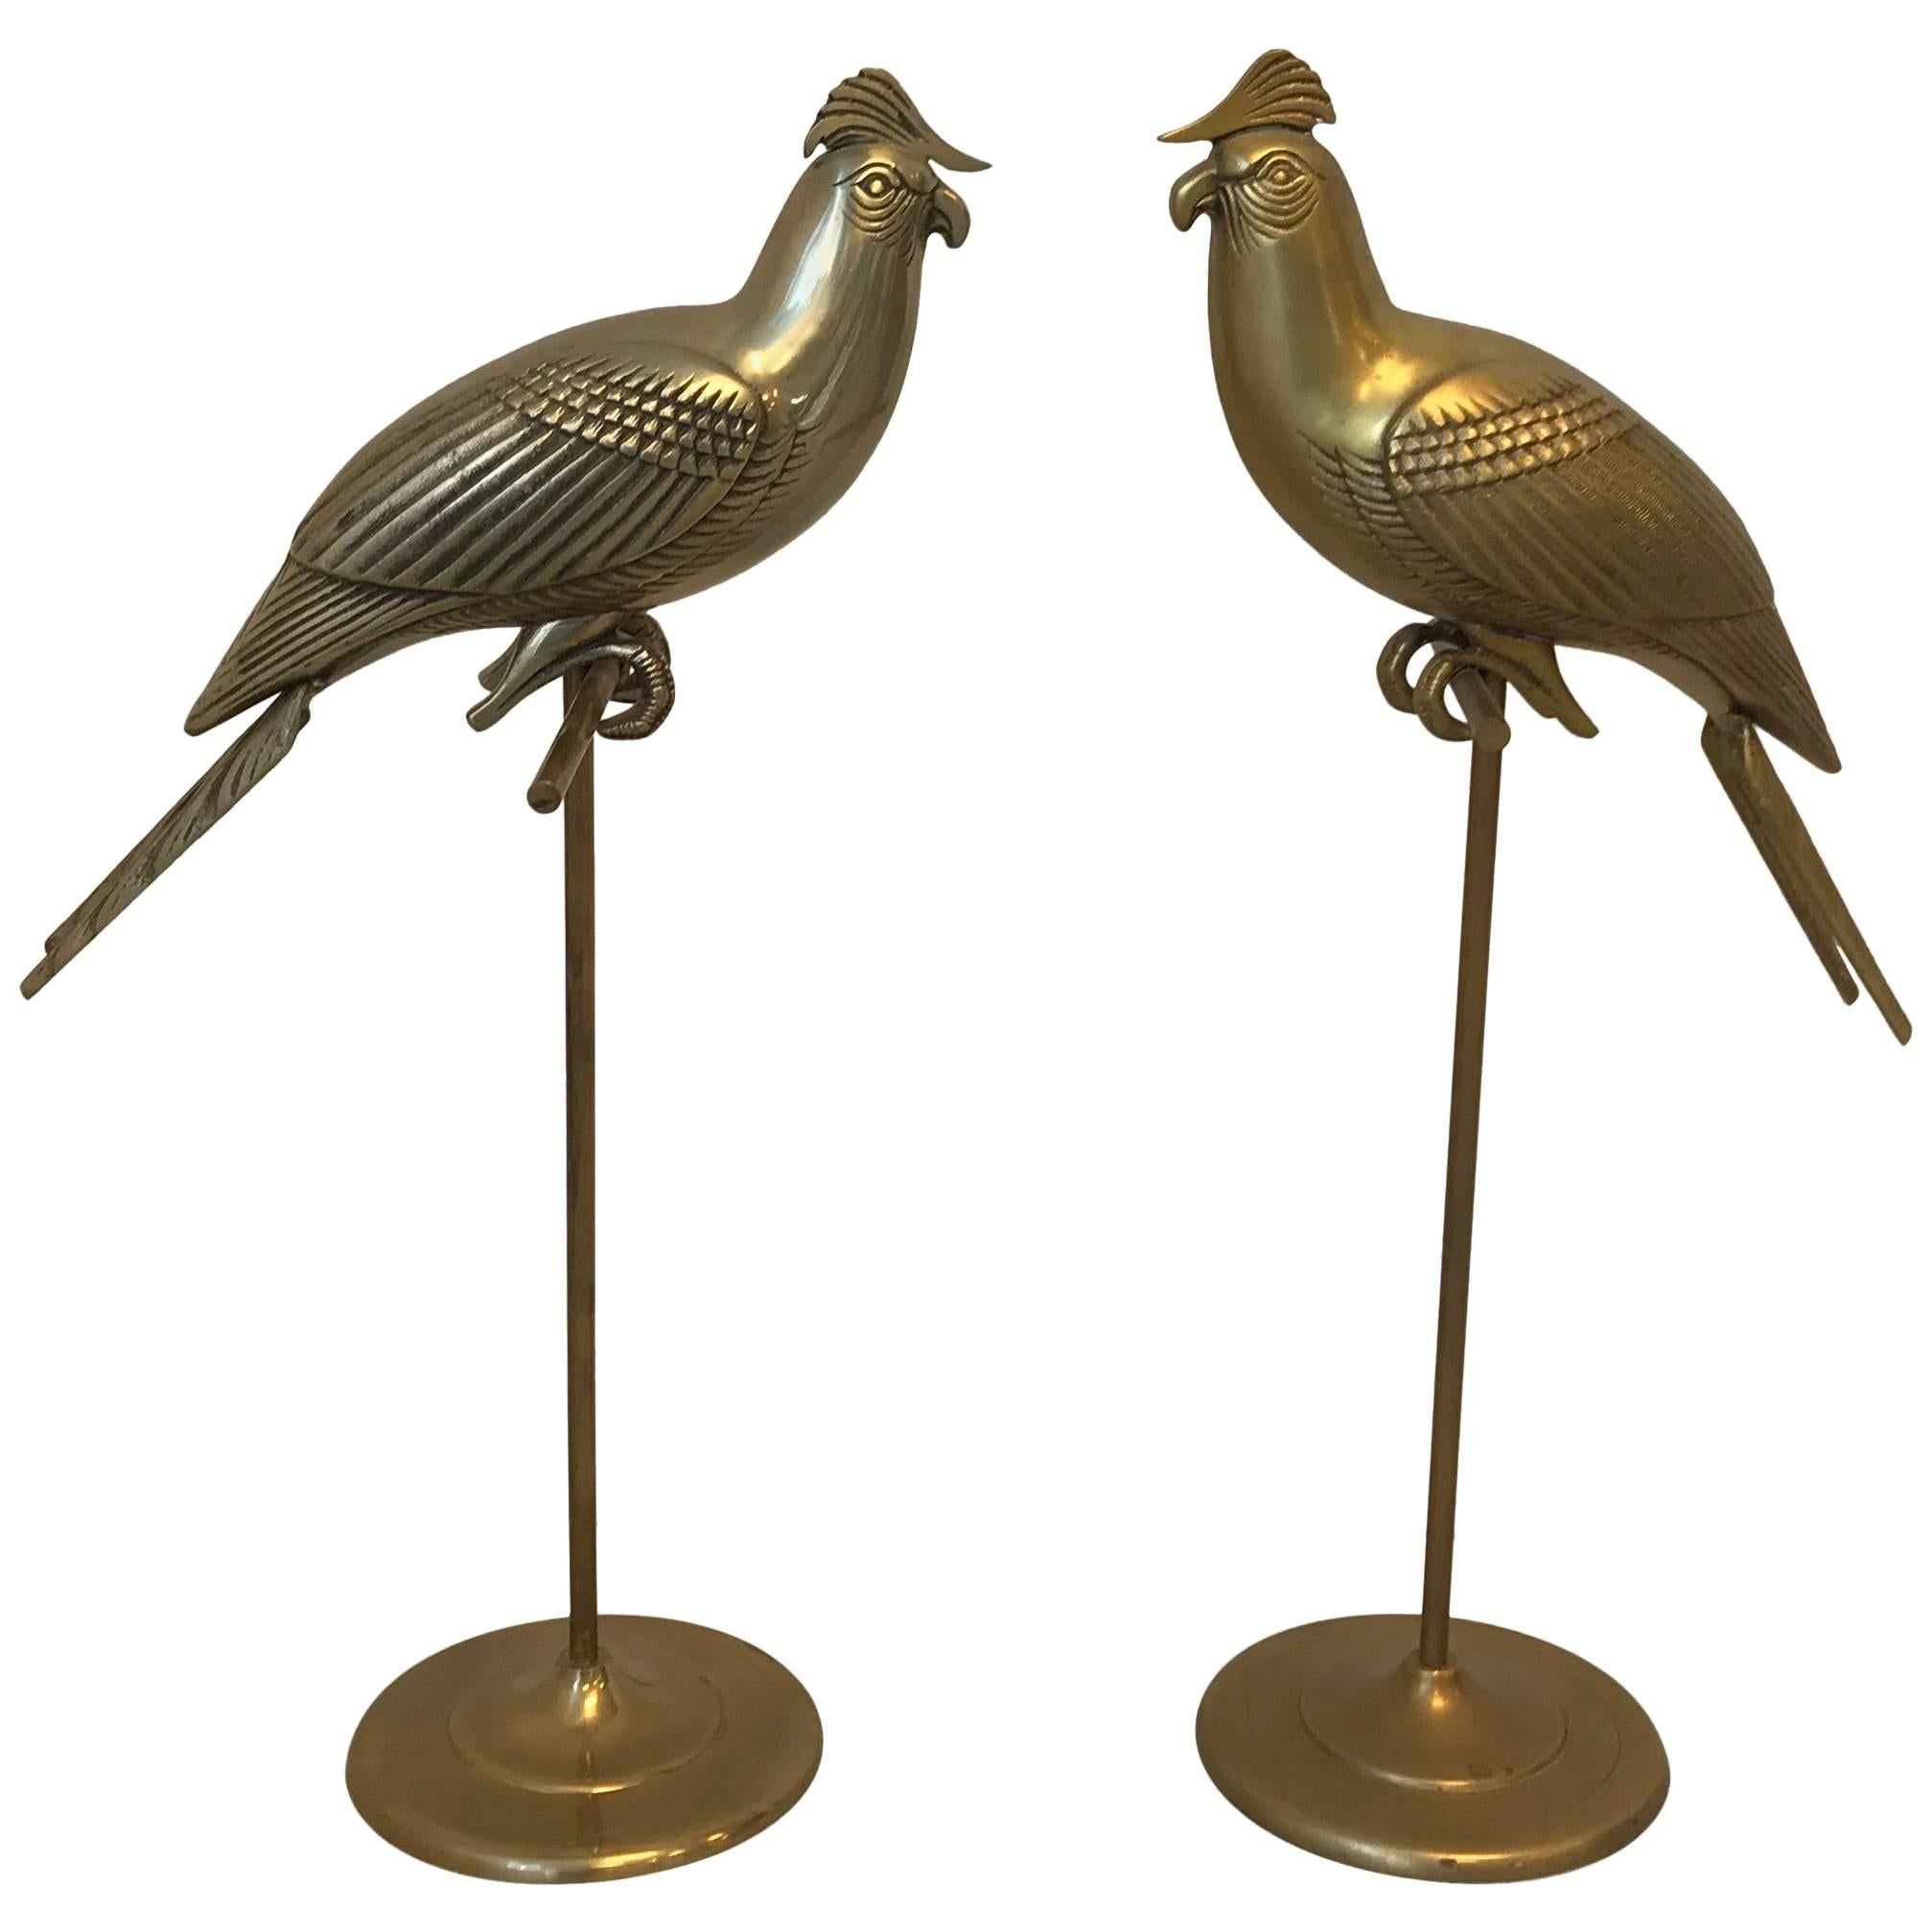 1960s Sergio Bustamante Style Brass Cockatiel Bird Sculpture on Perch, Pair